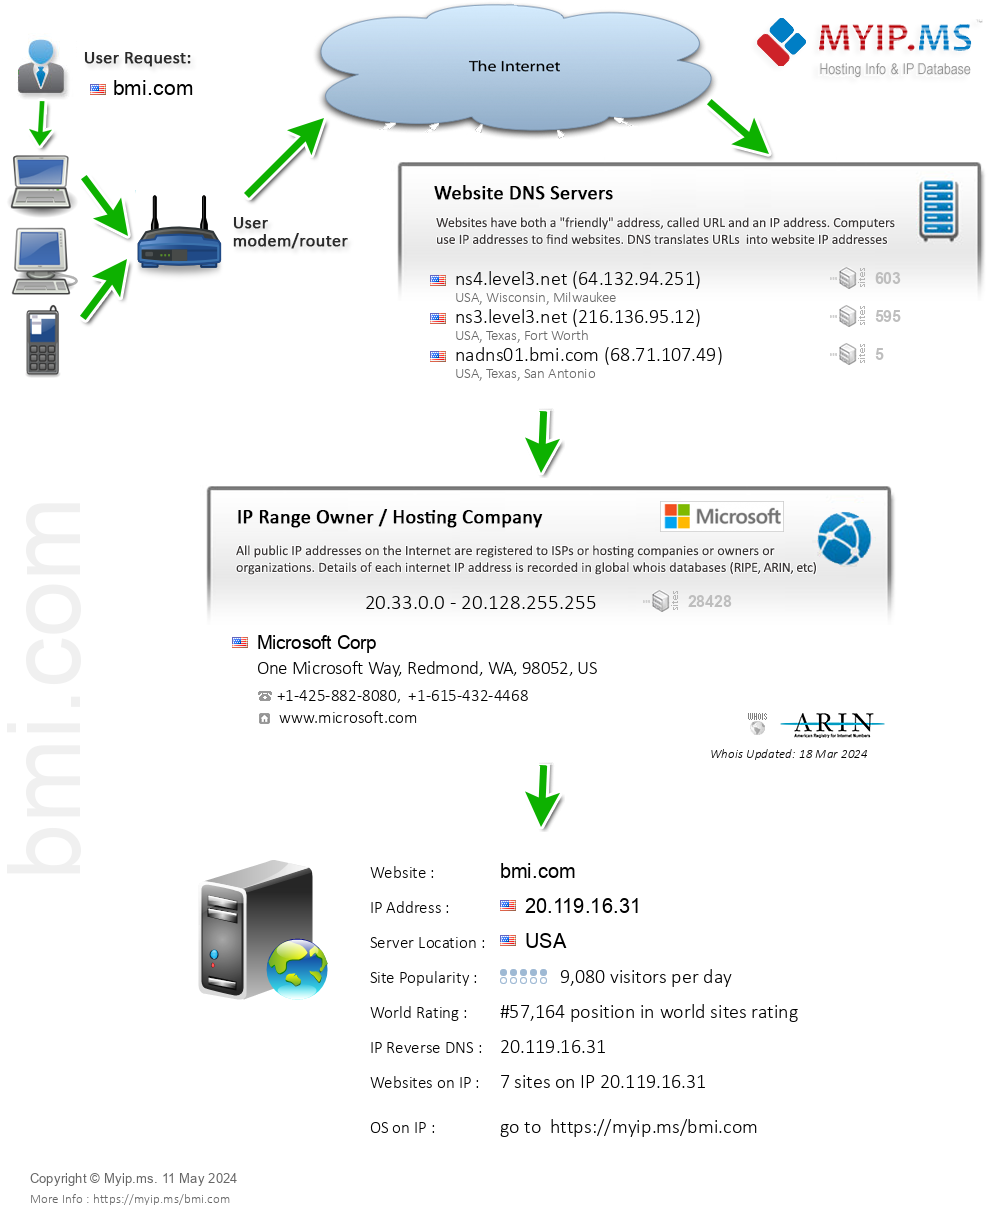 Bmi.com - Website Hosting Visual IP Diagram